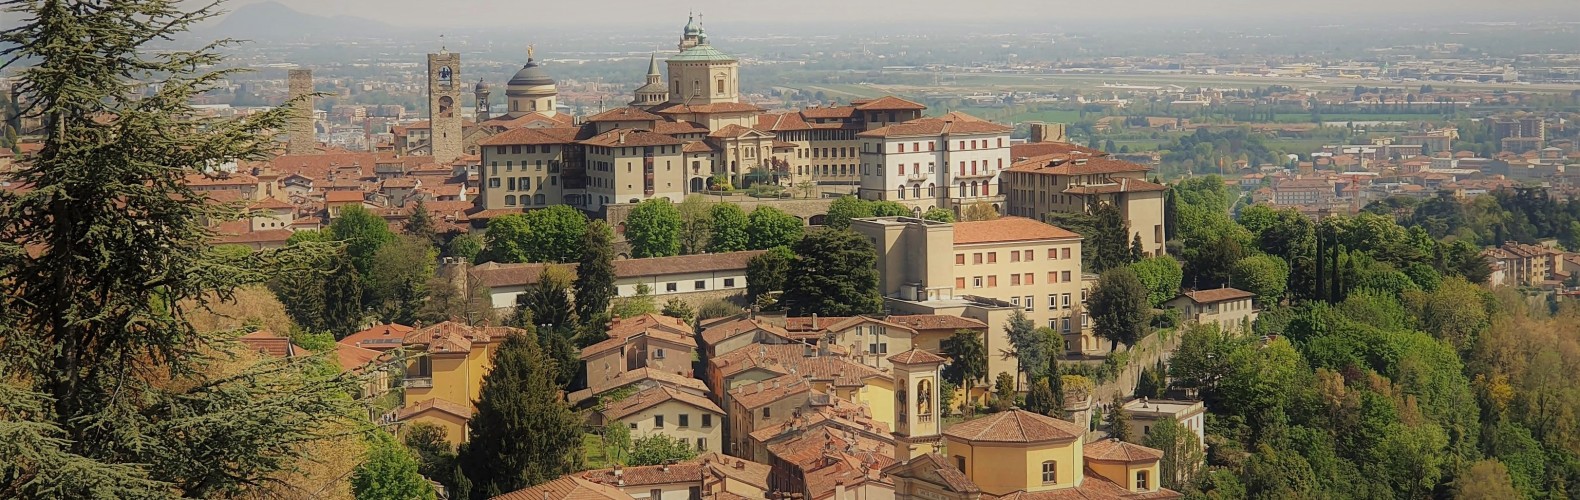 Veduta di Bergamo alta dal colle di S. Vigilio